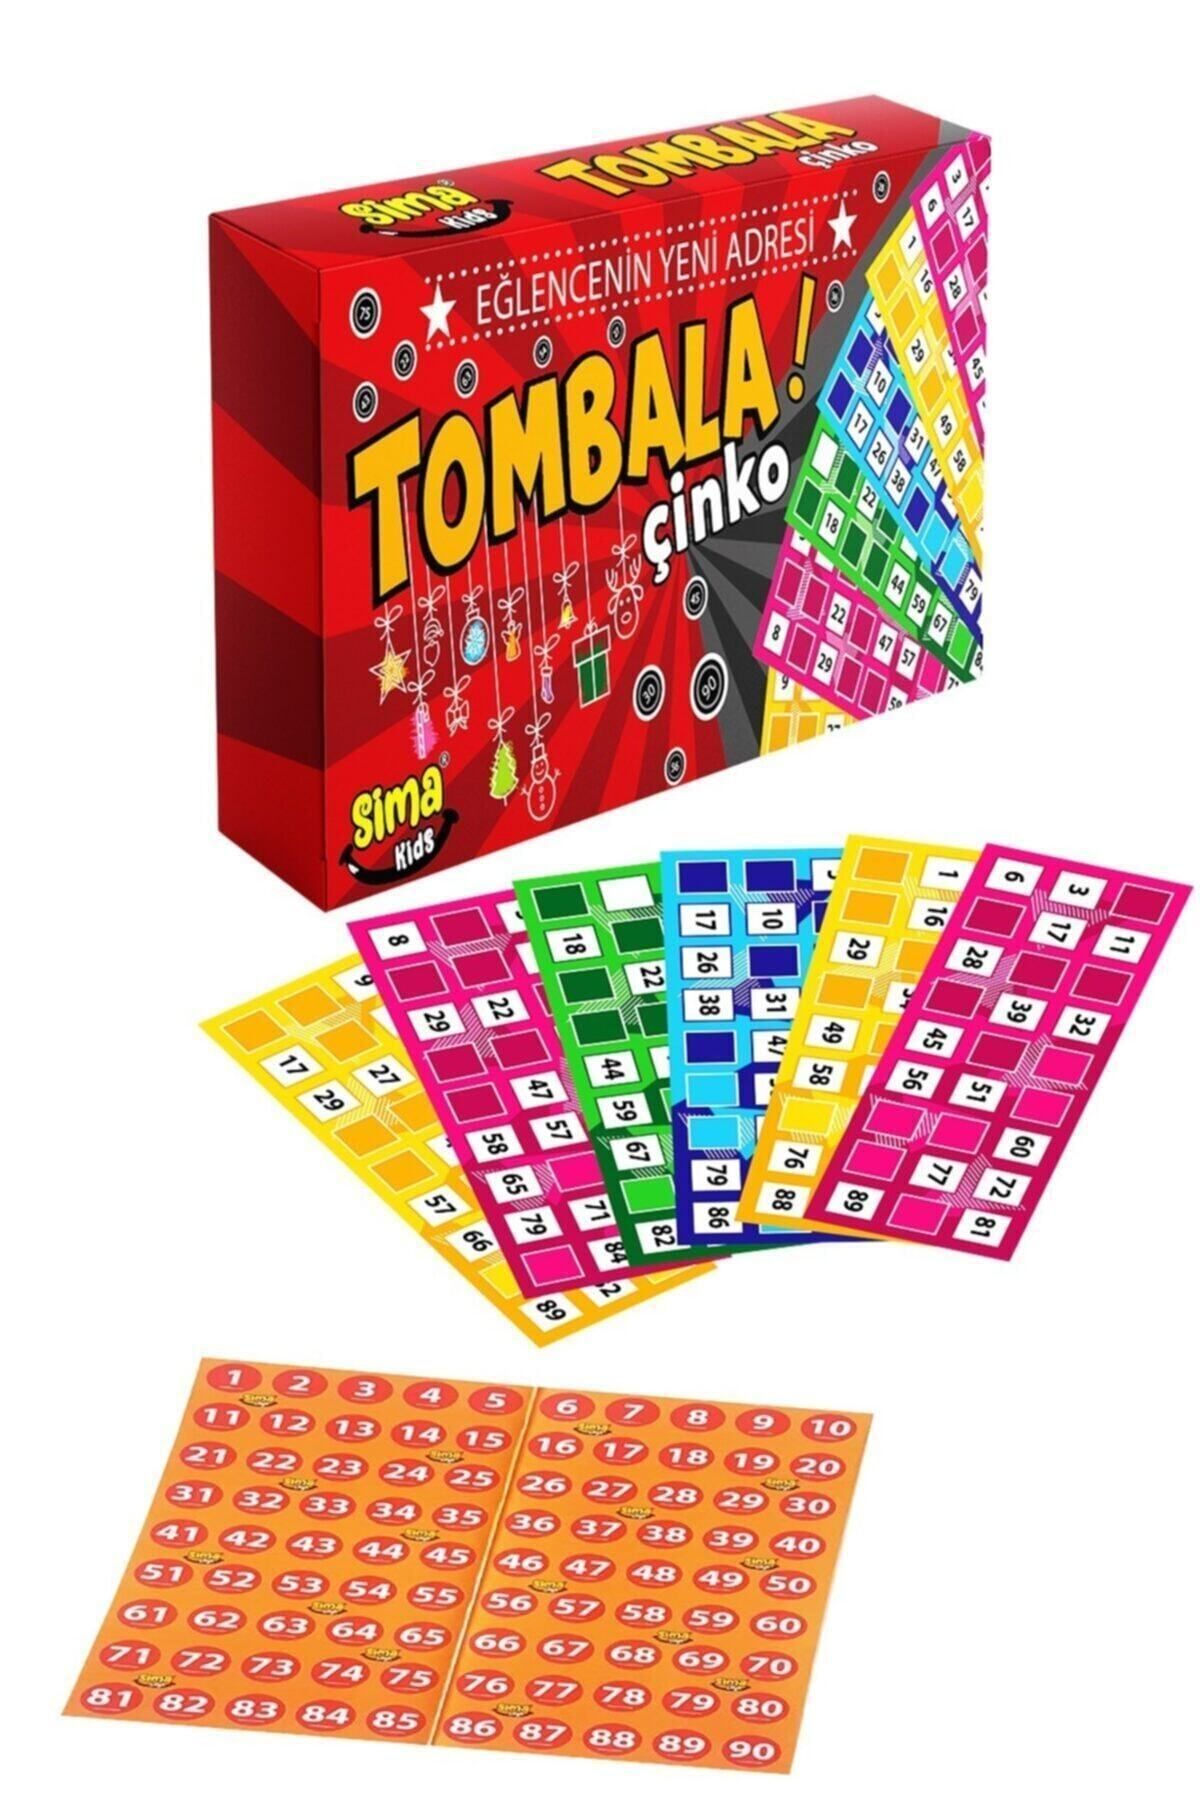 Sima Tombala Çinko Yılbaşı Tombalası Toys